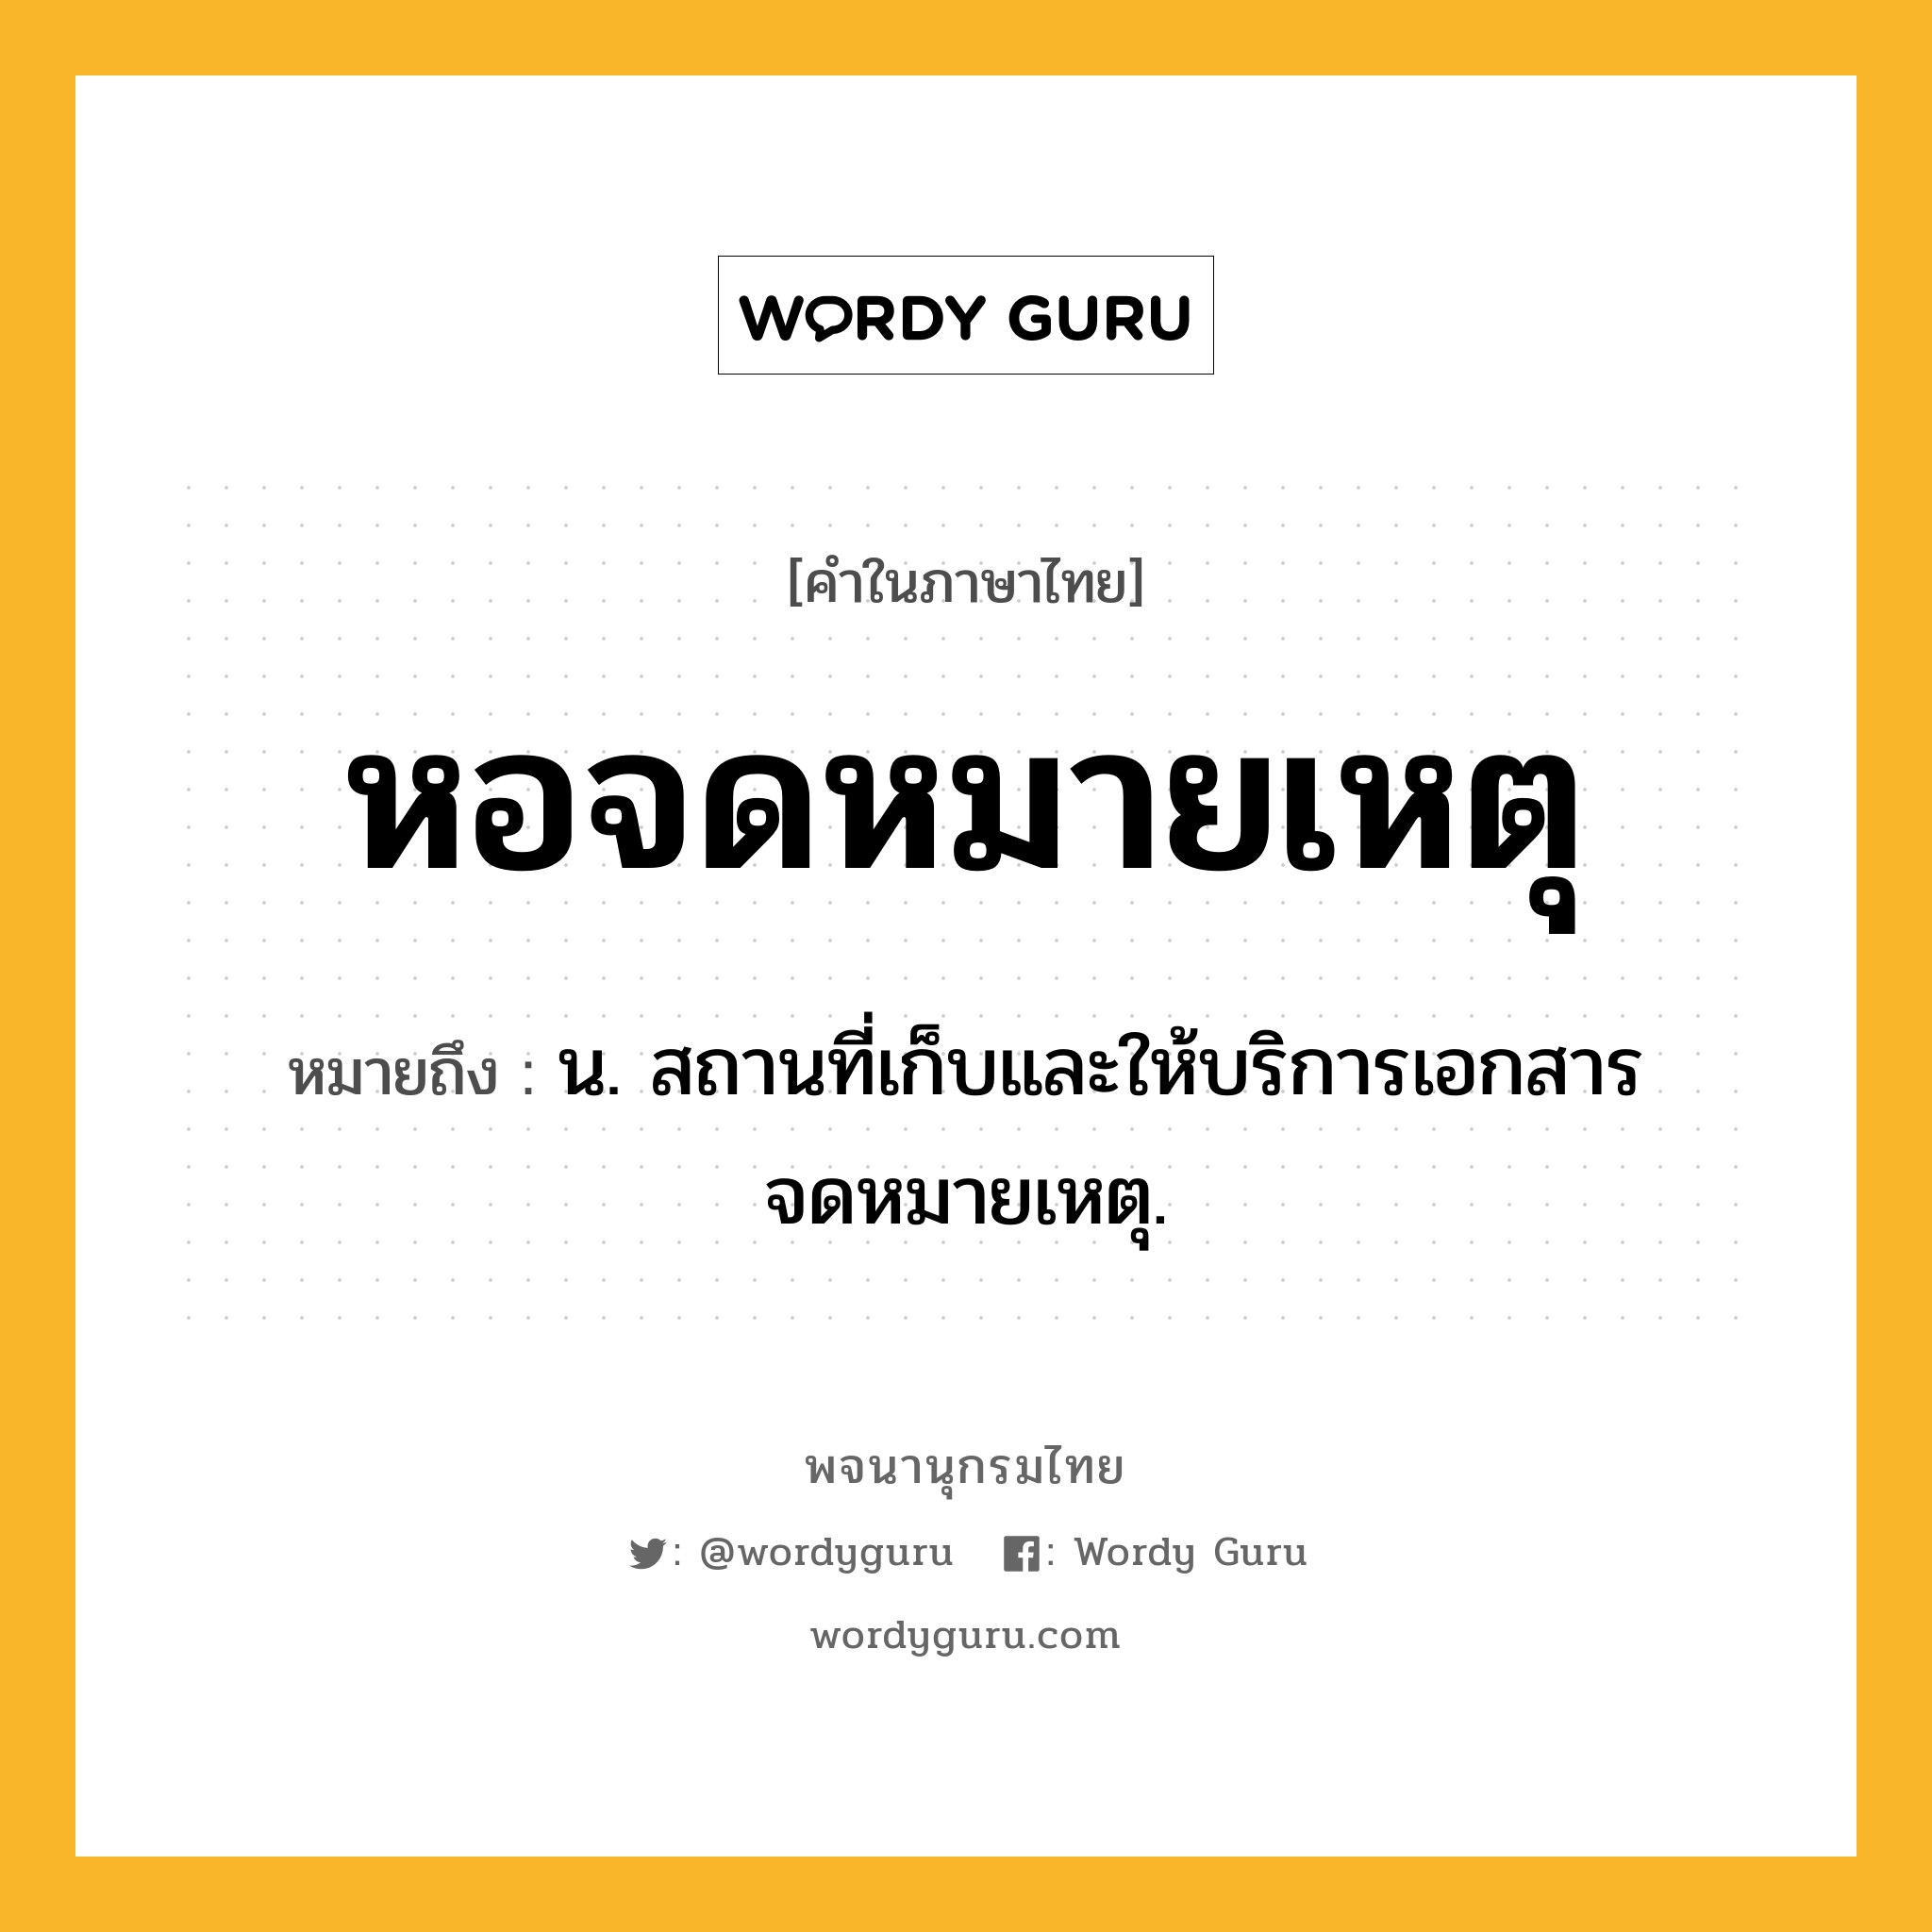 หอจดหมายเหตุ ความหมาย หมายถึงอะไร?, คำในภาษาไทย หอจดหมายเหตุ หมายถึง น. สถานที่เก็บและให้บริการเอกสารจดหมายเหตุ.